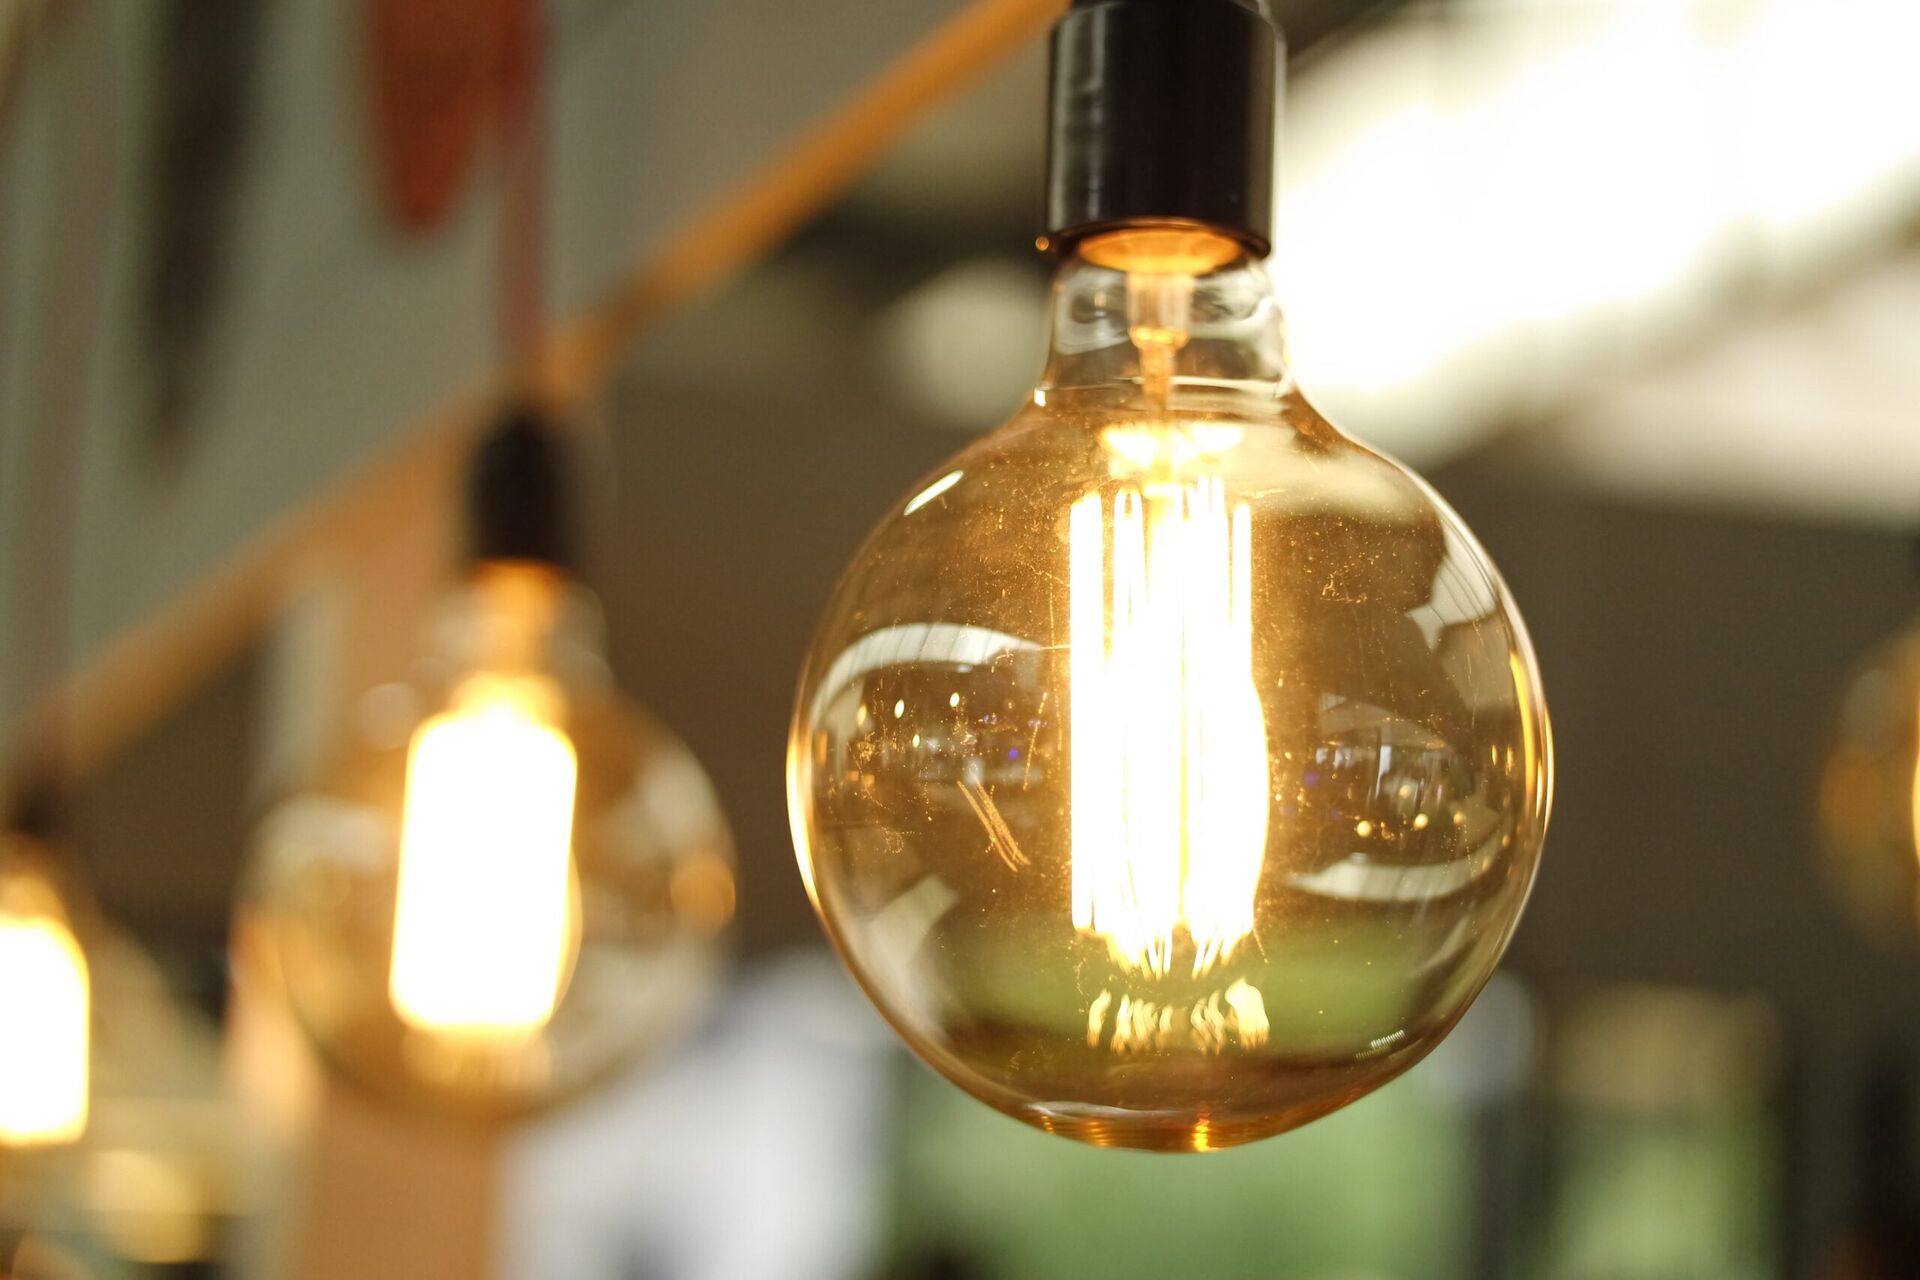 Inteligentne systemy zarządzania energią w domu - innowacyjne rozwiązania dla oszczędności